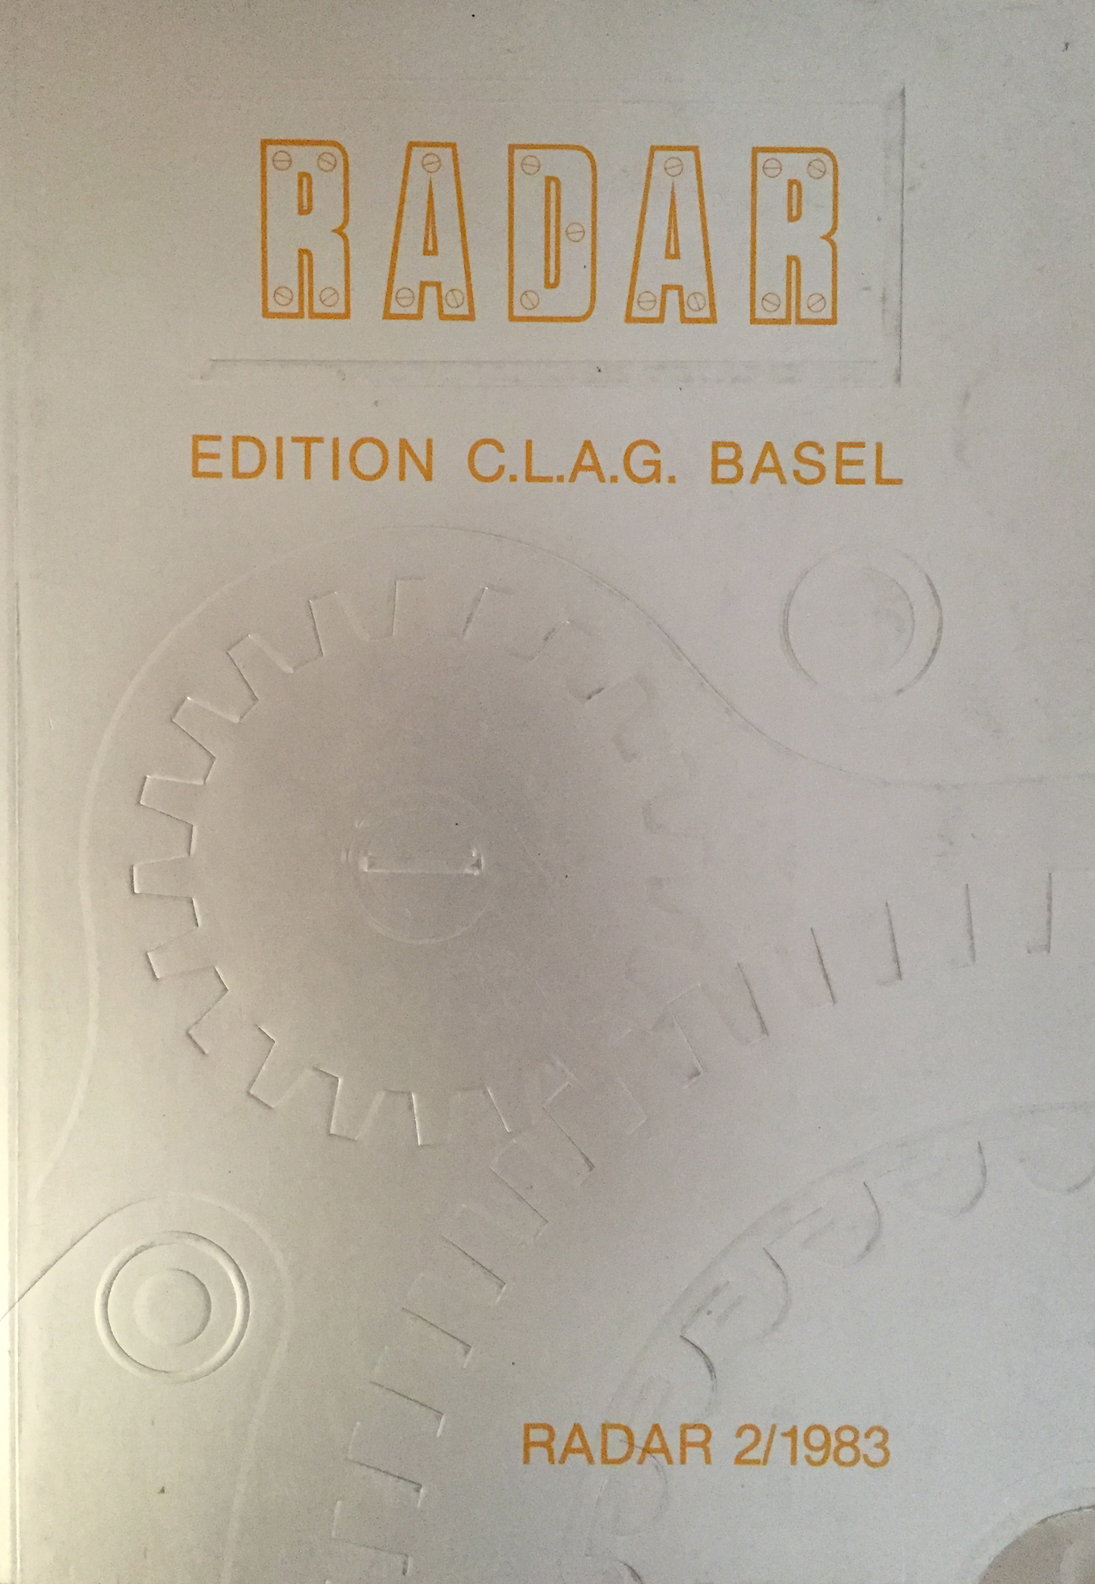 RADAR C.L.A.G. BASEL 1983